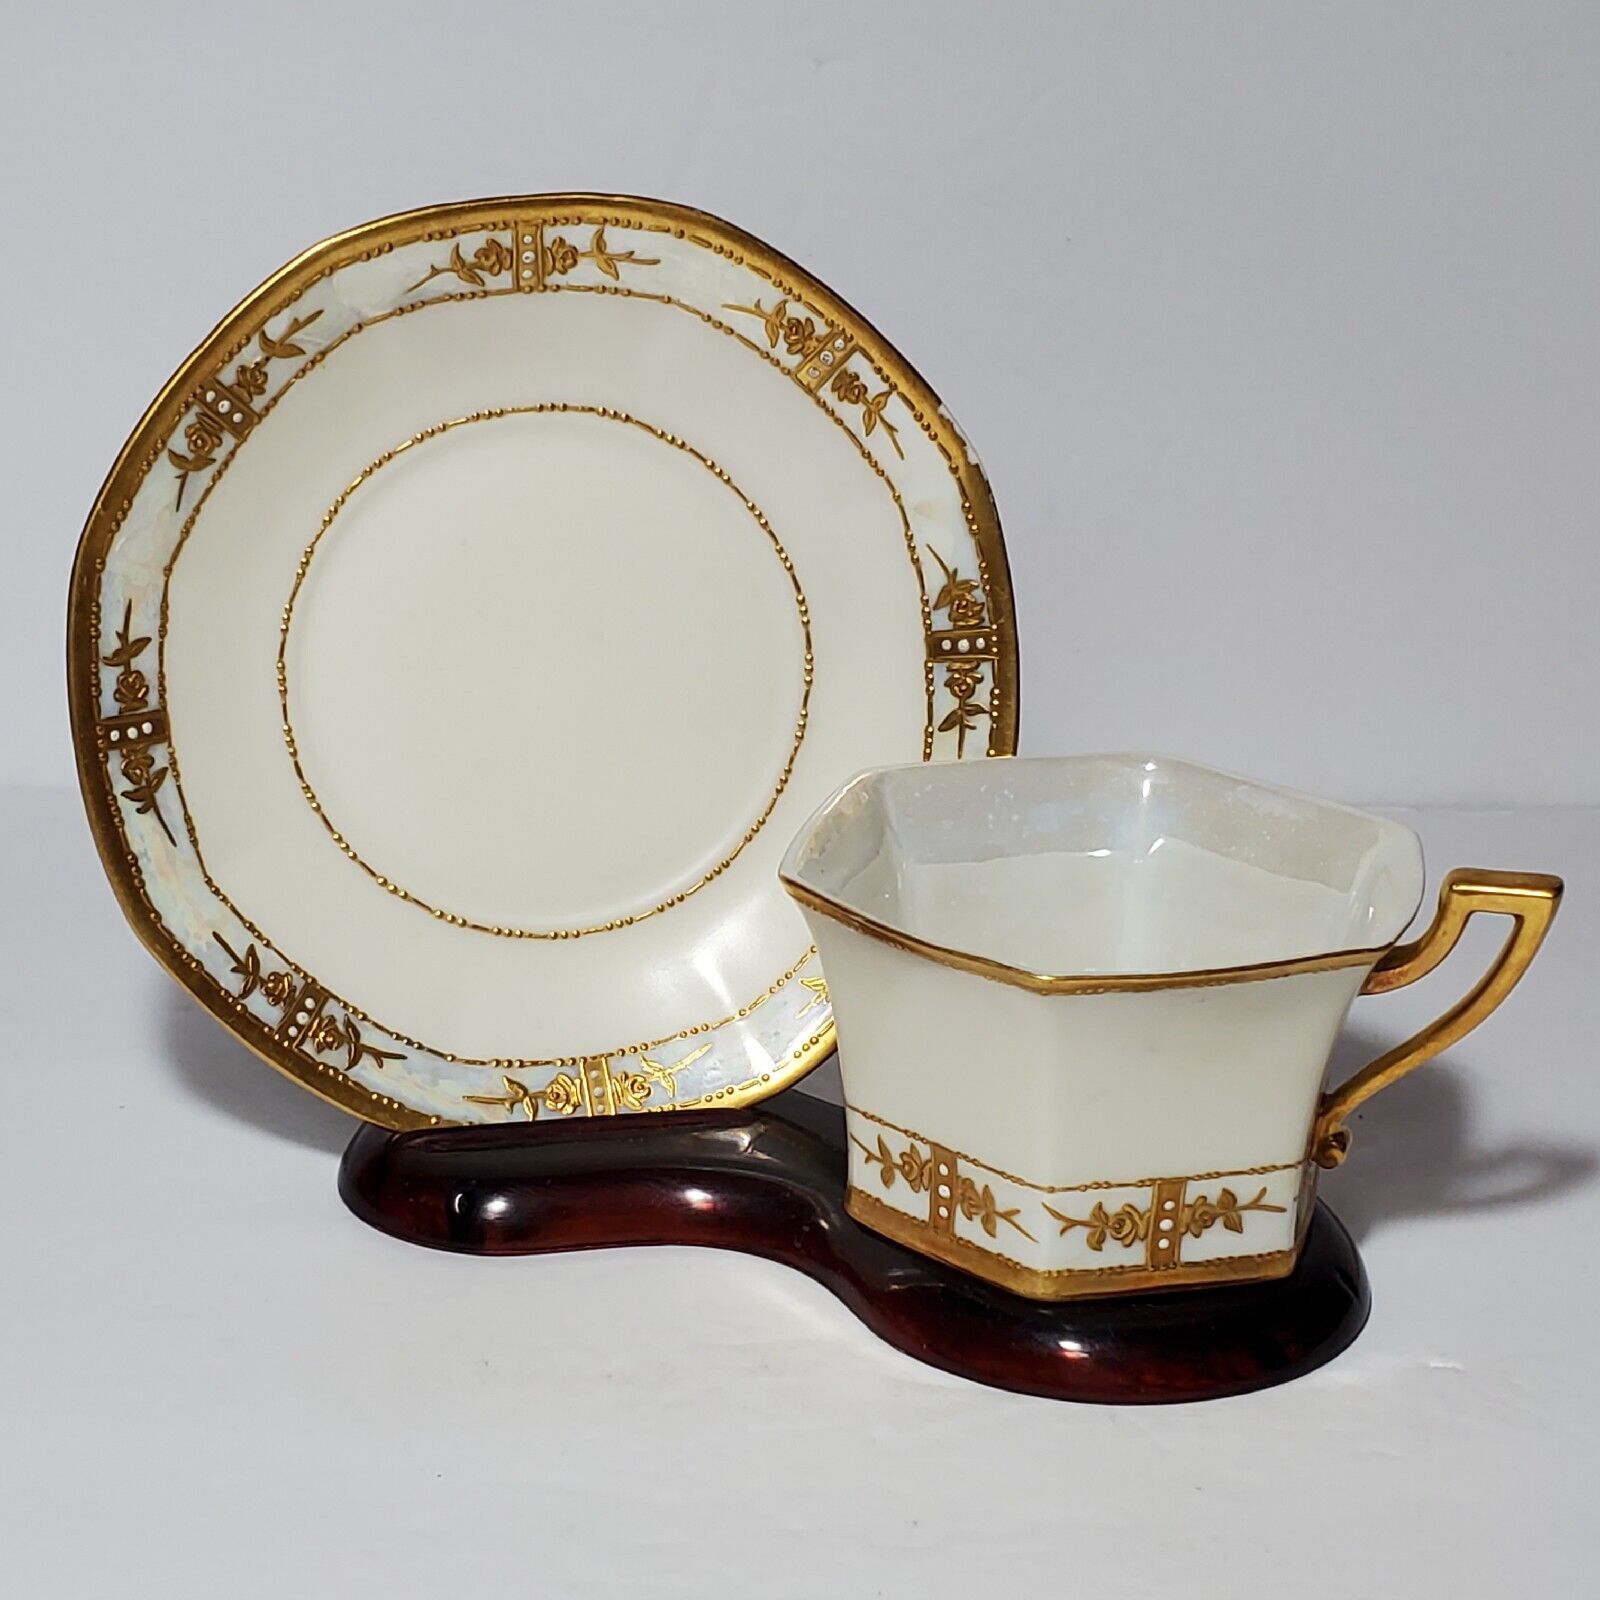 T&V Limoges Teacup and Saucer France White Gold Art Deco Vintage